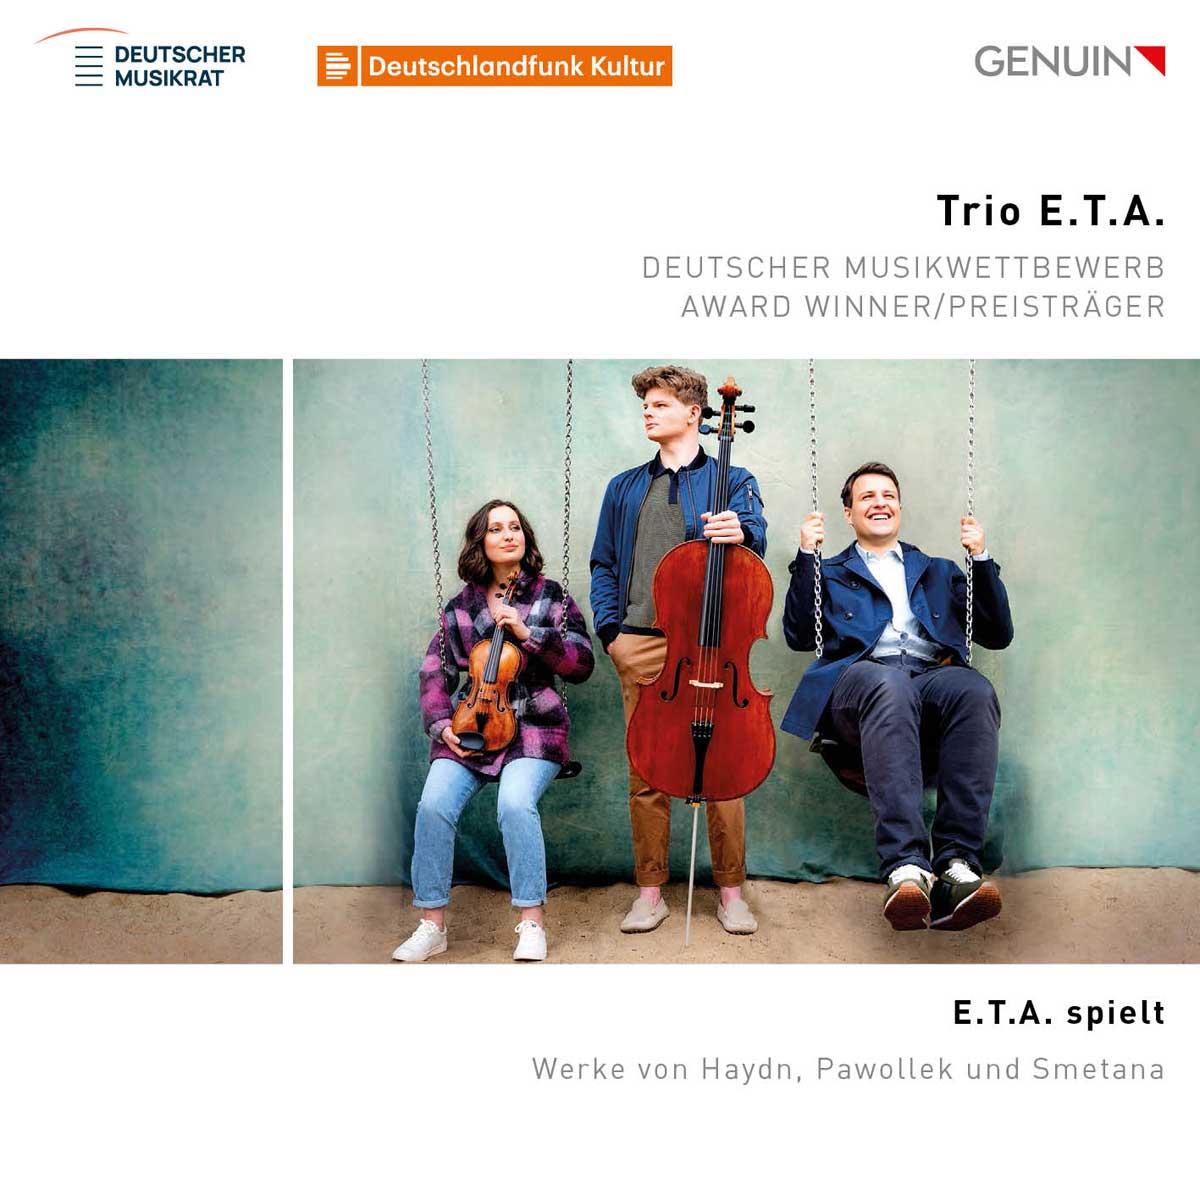 CD album cover 'E.T.A. spielt – E.T.A. plays' (GEN 23816) with Trio E.T.A.